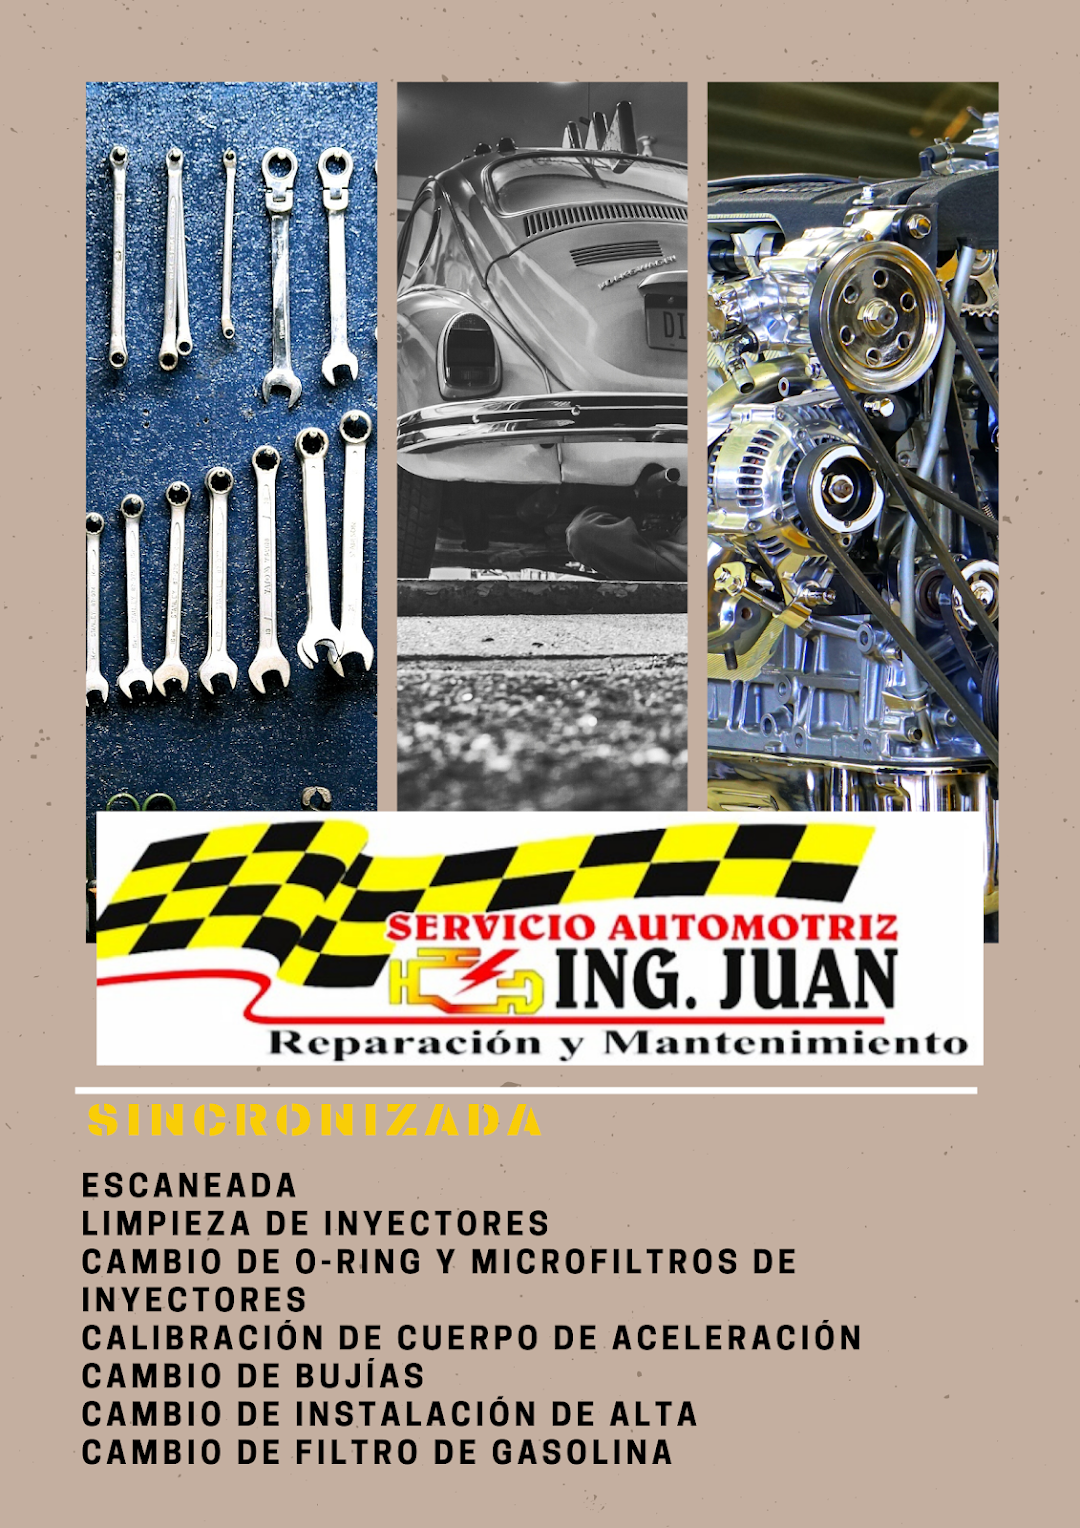 Servicio Automotriz Ing. Juan